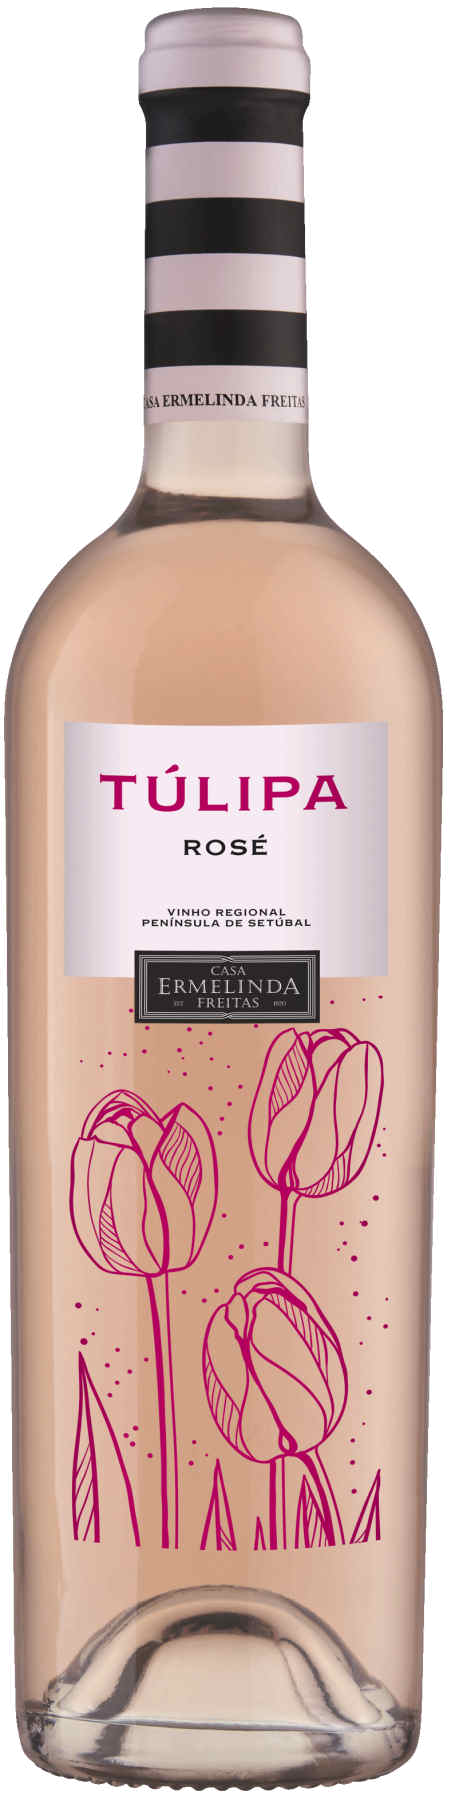 Casa Ermelinda La Tulipa Rosado de Setubal